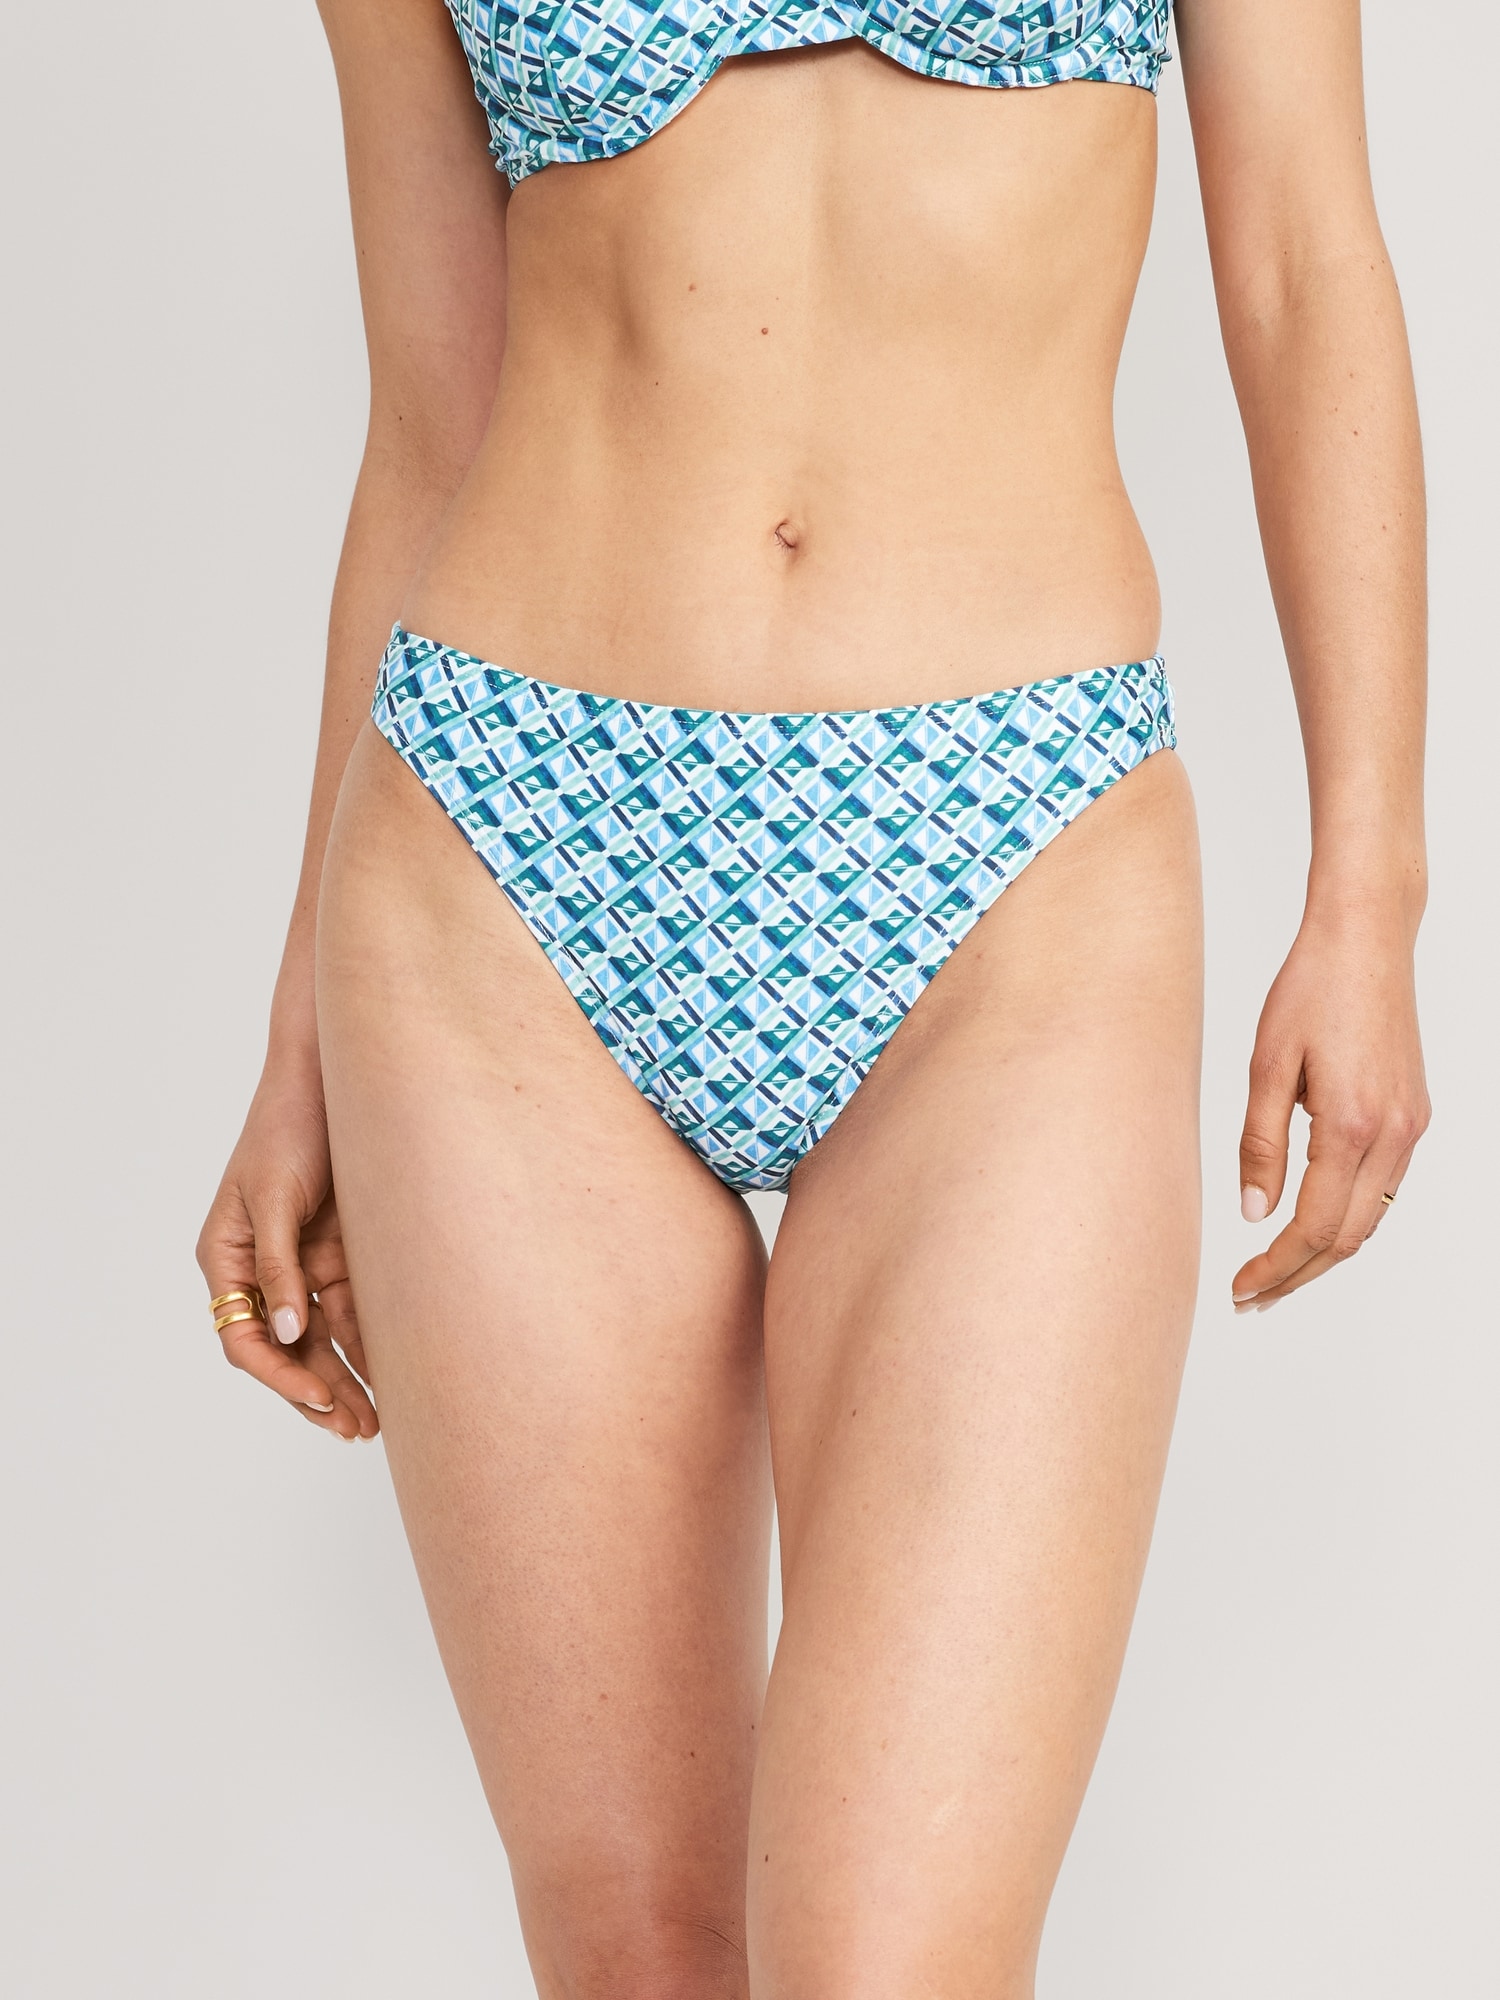 French Cut Bikini Bottoms for Women - Shop Online now –